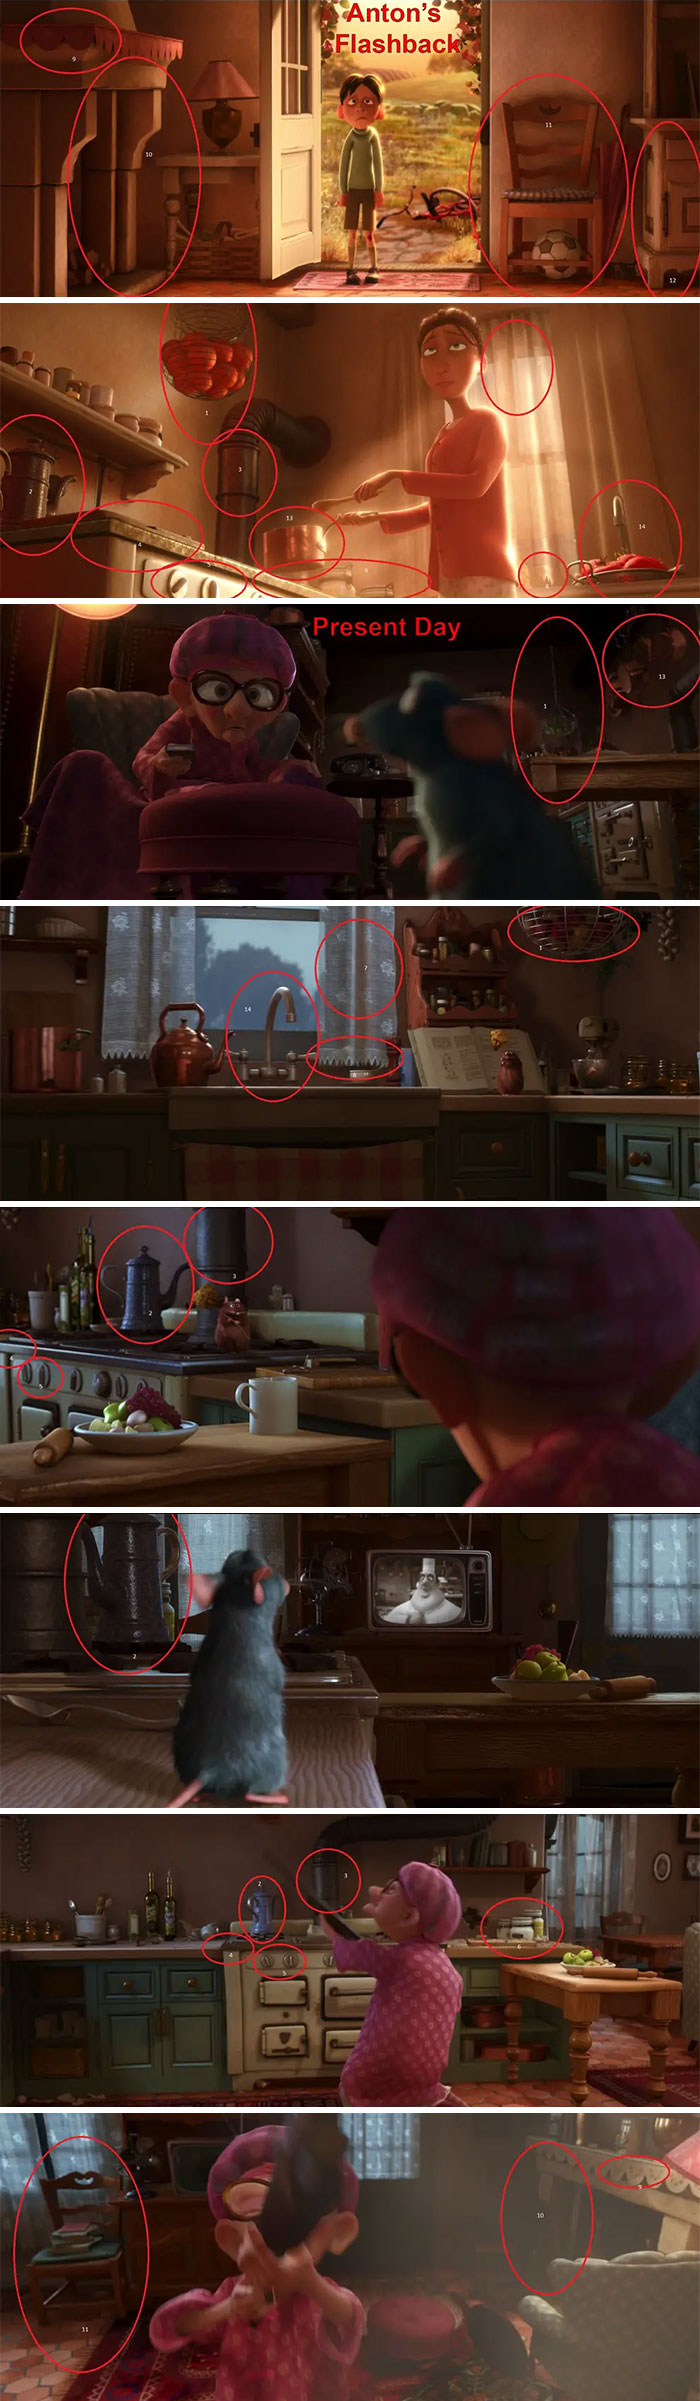 6 5fc6417d11528  700 - Os impecáveis detalhes da Pixar: Todos os ''easter eggs'' de Rattatouille